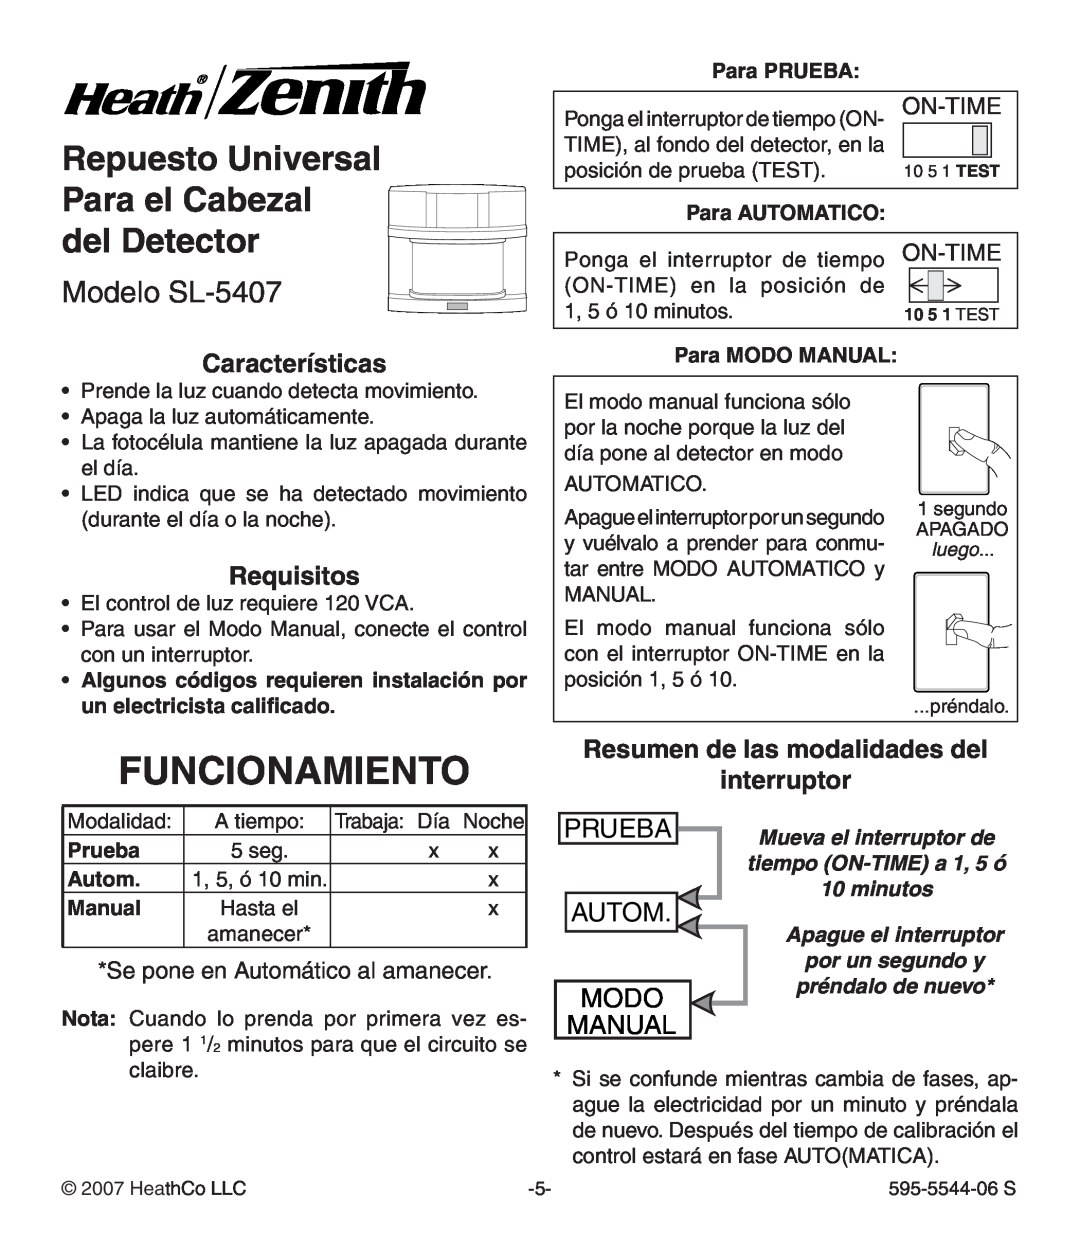 Heath Zenith Funcionamiento, del Detector Modelo SL-5407, Características, Requisitos, Para PRUEBA, Para AUTOMATICO 